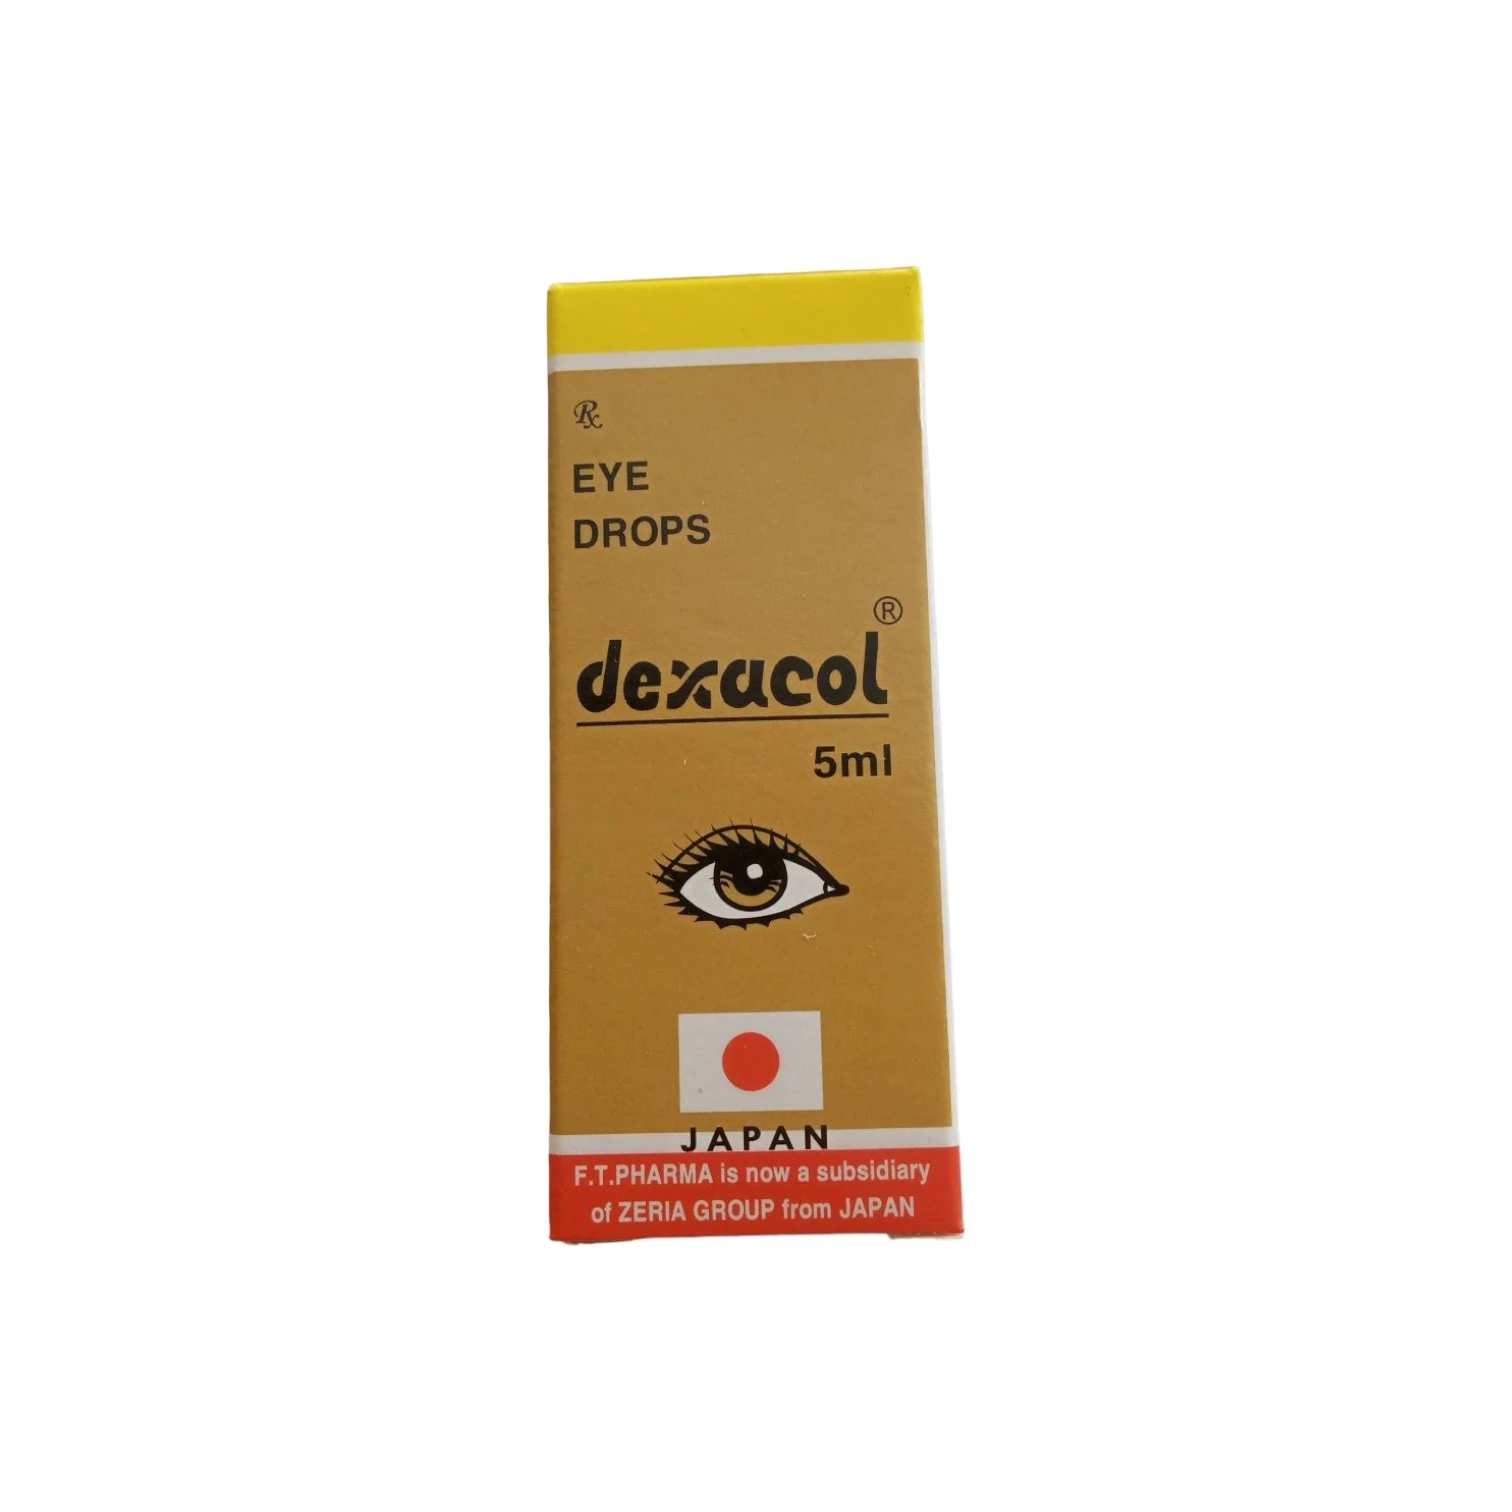 DEXACOL Eye drops